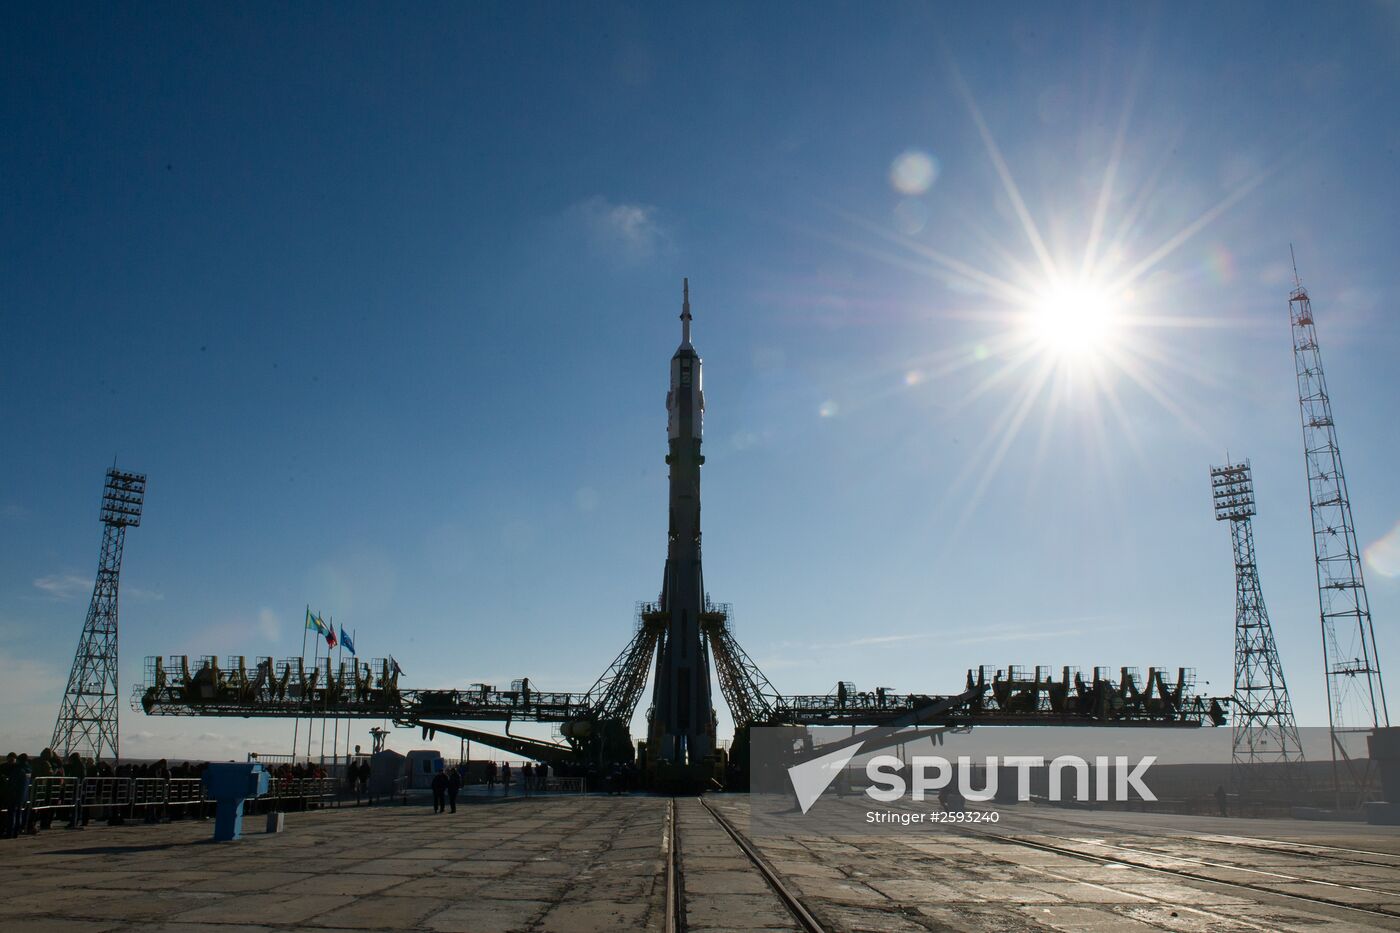 Preparing to launch Soyuz-FG rocket with Soyuz TMA-16M spacecraft